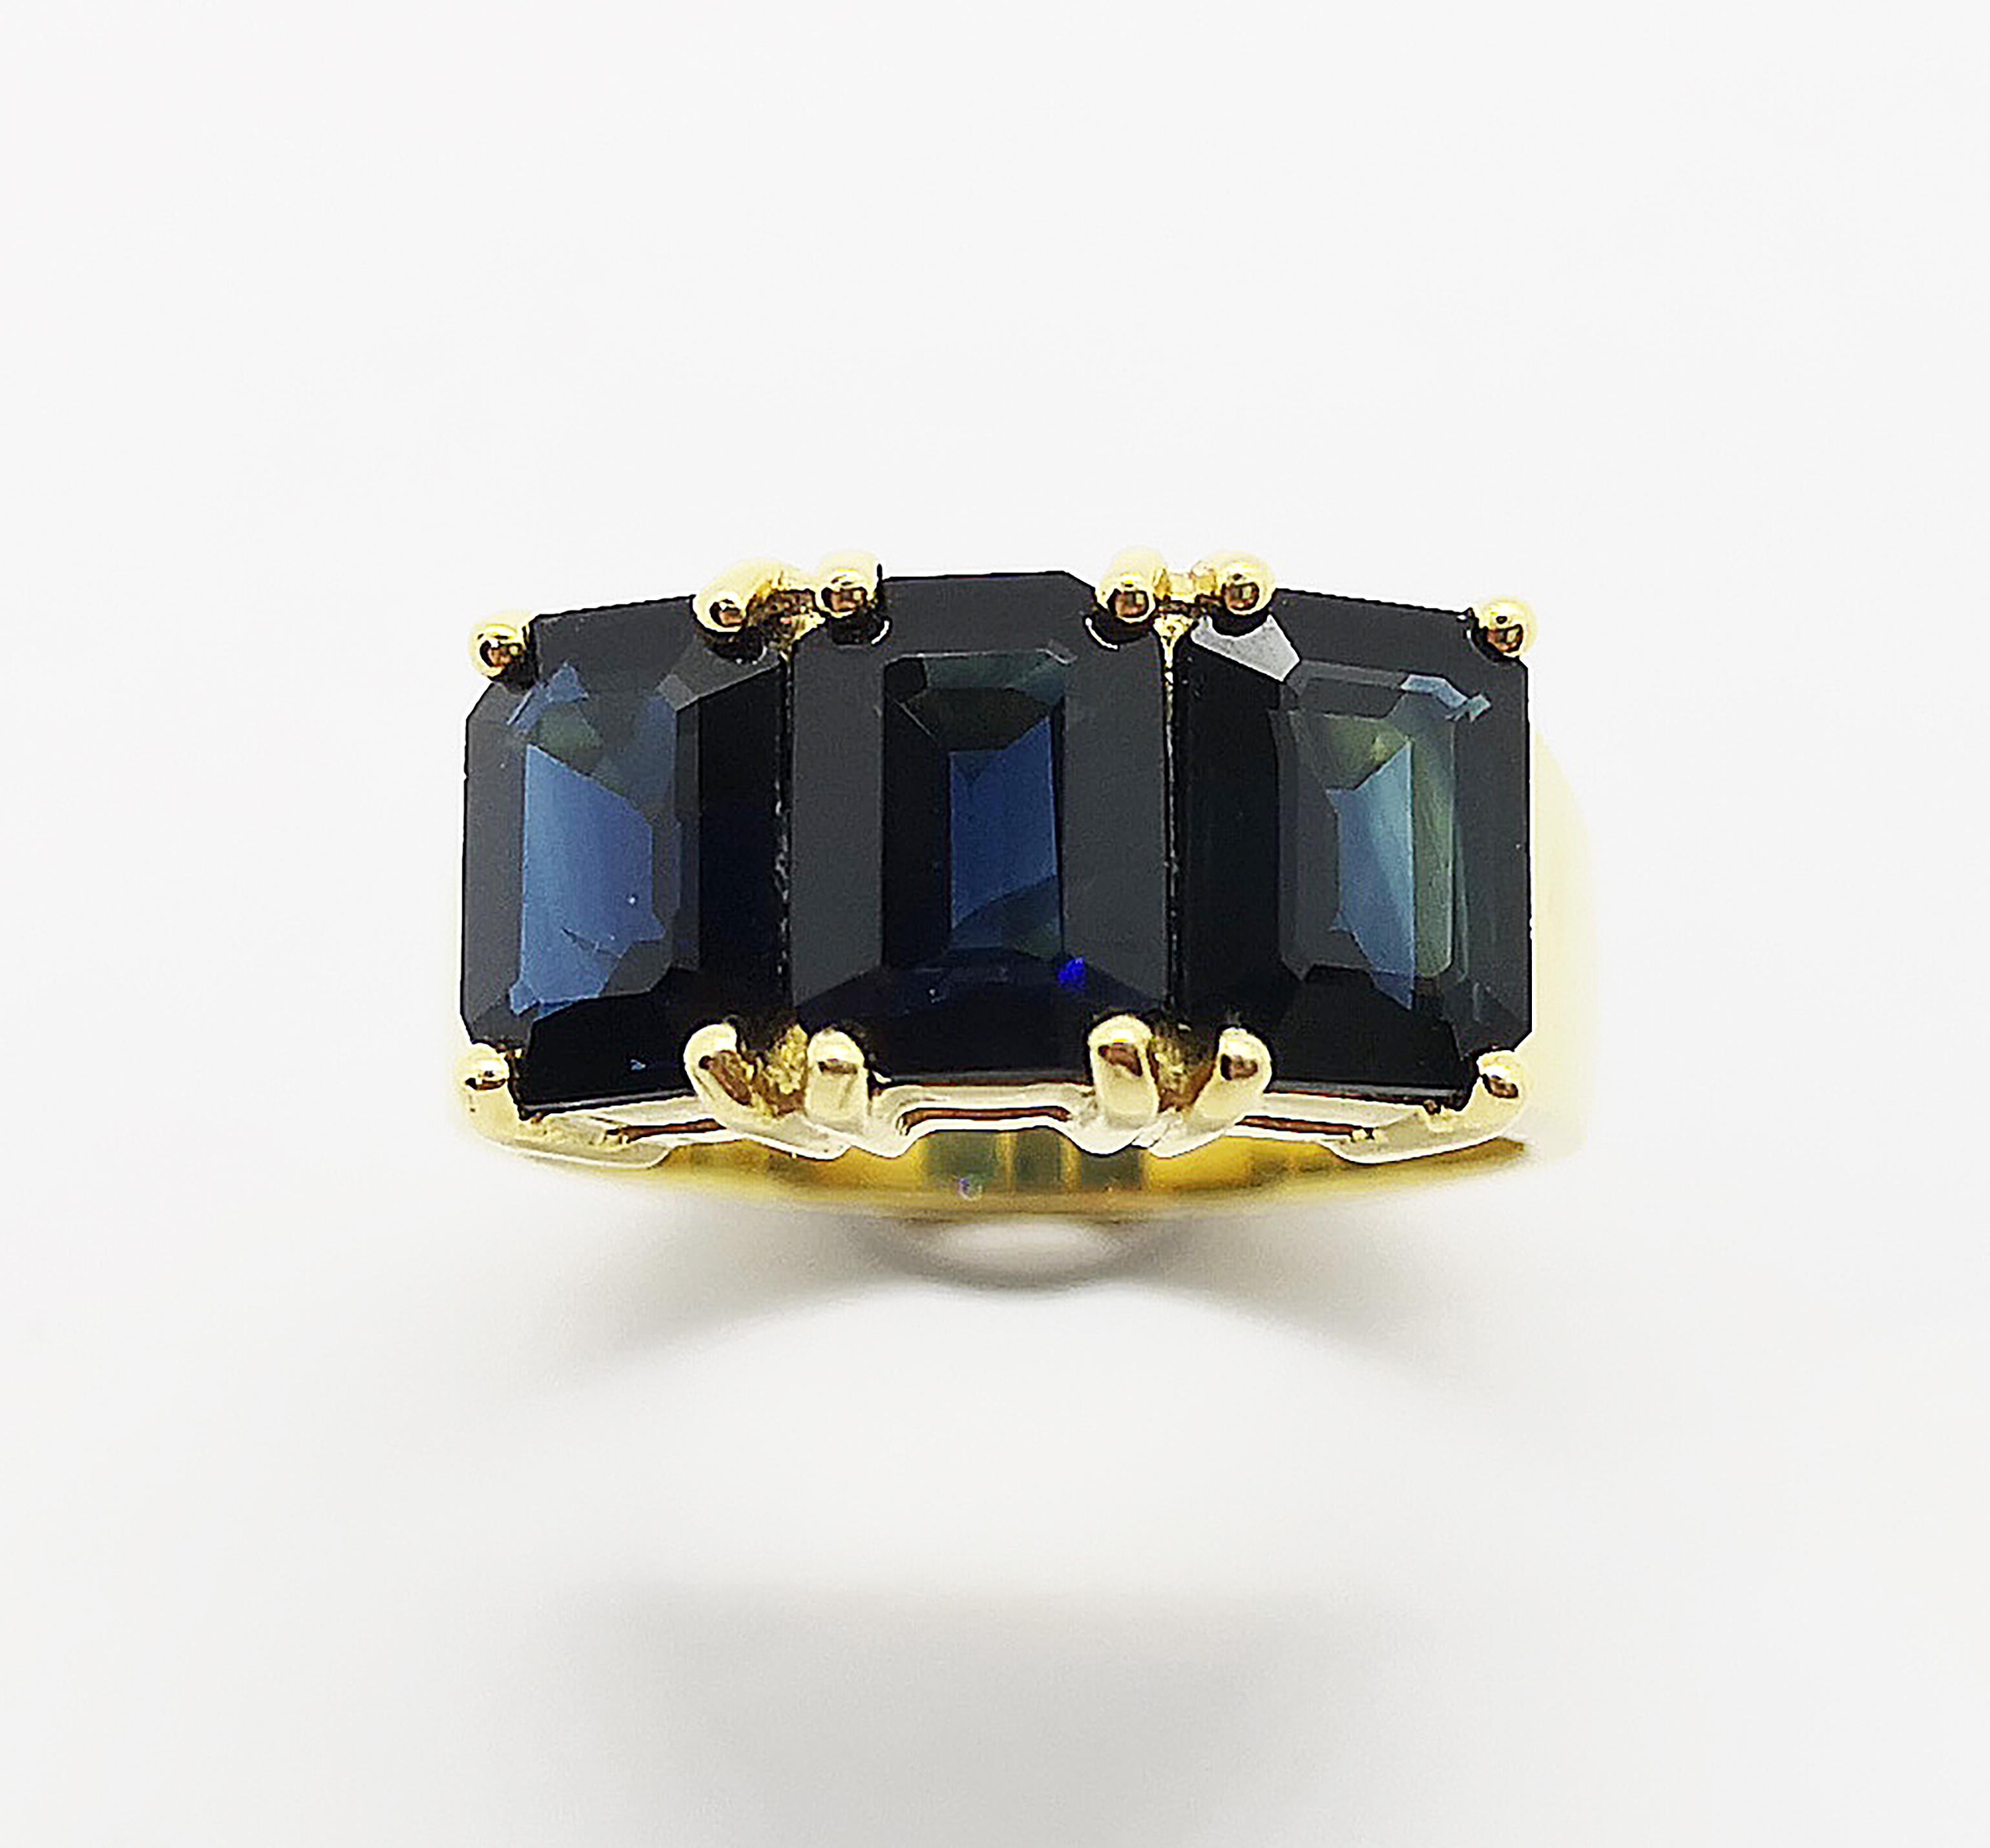 Blauer Saphir 4,83 Karat Ring in 18 Karat Goldfassung

Breite:  1.6 cm 
Länge: 0,8 cm
Ringgröße: 52
Gesamtgewicht: 8,33 Gramm

